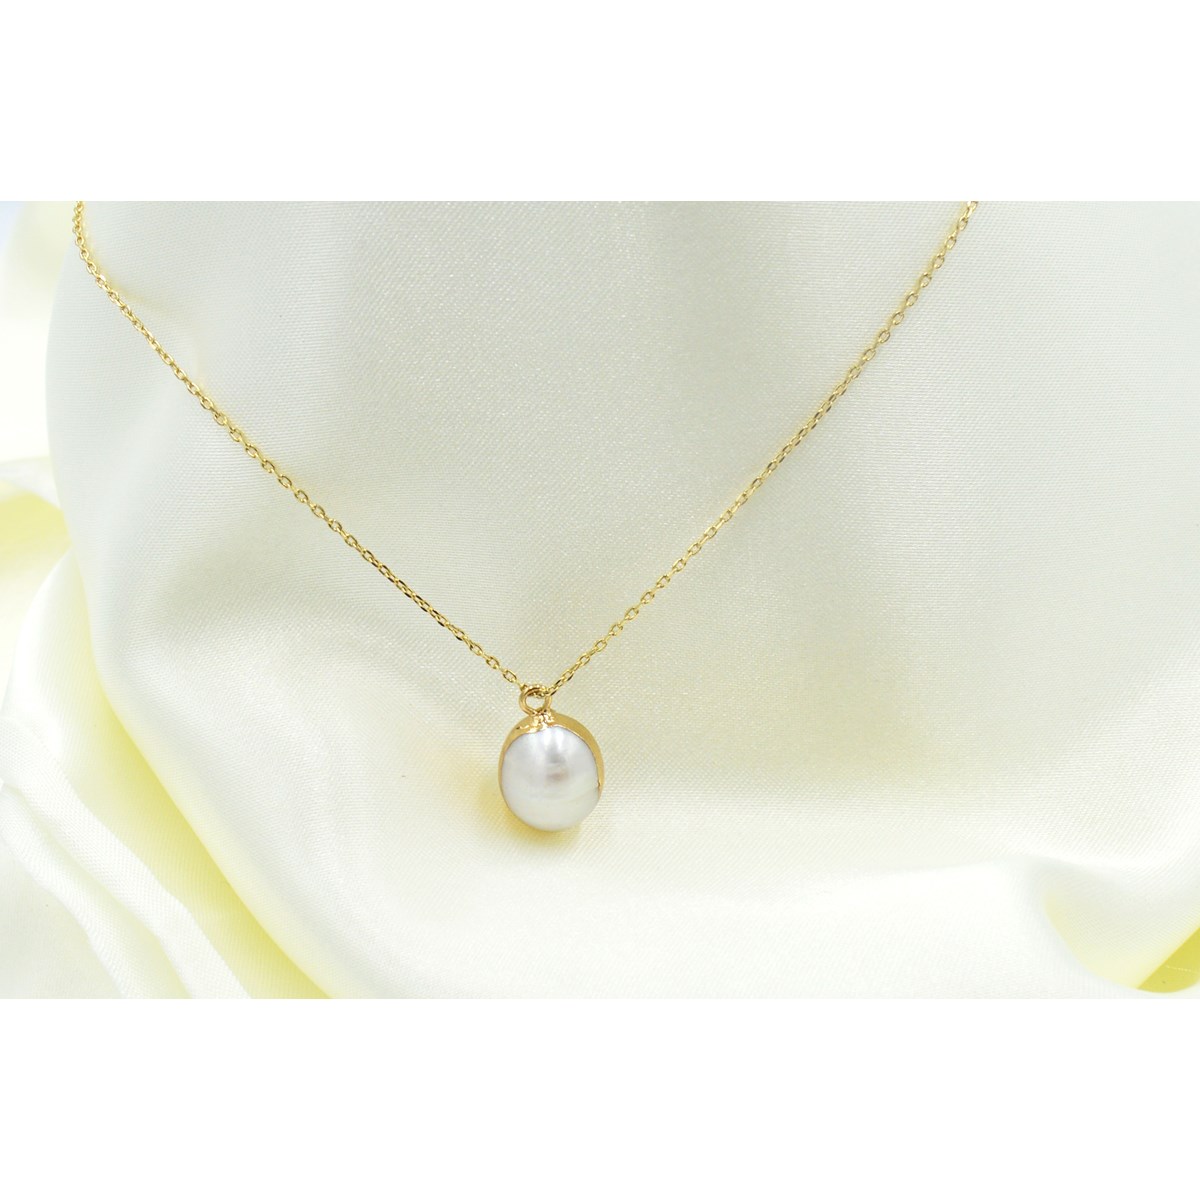 Collier délicat minimaliste pendentif perle de nacre doré - vue 2